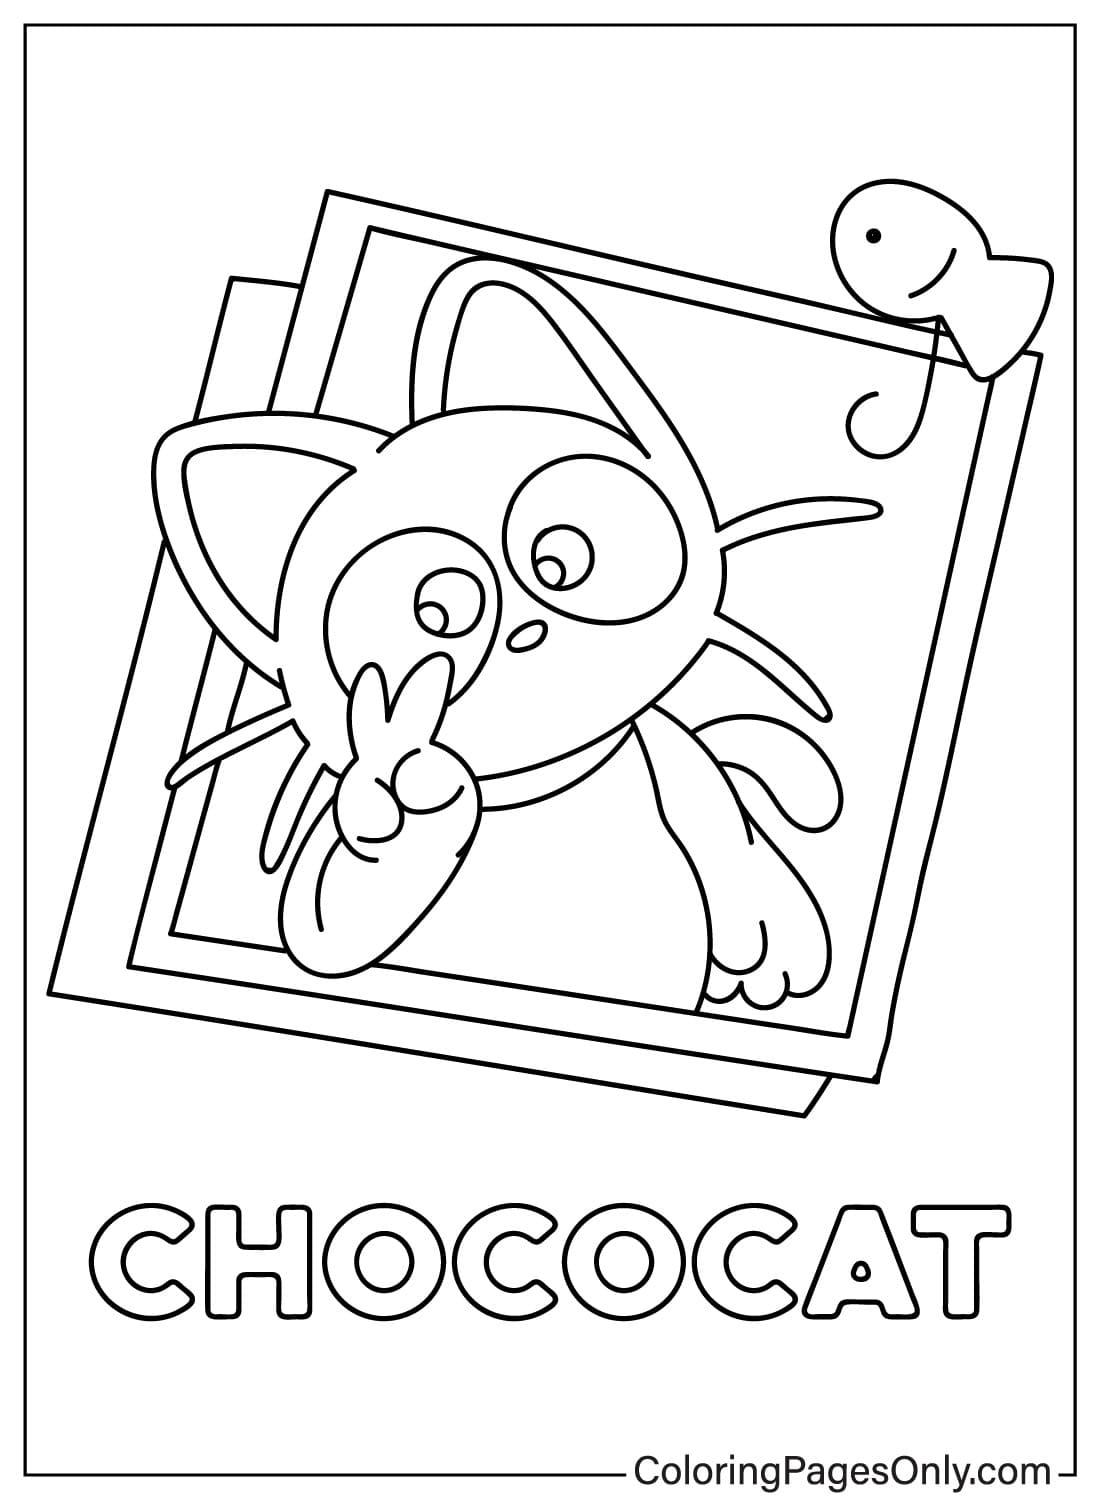 Página para colorear de Chococat Imágenes de Chococat